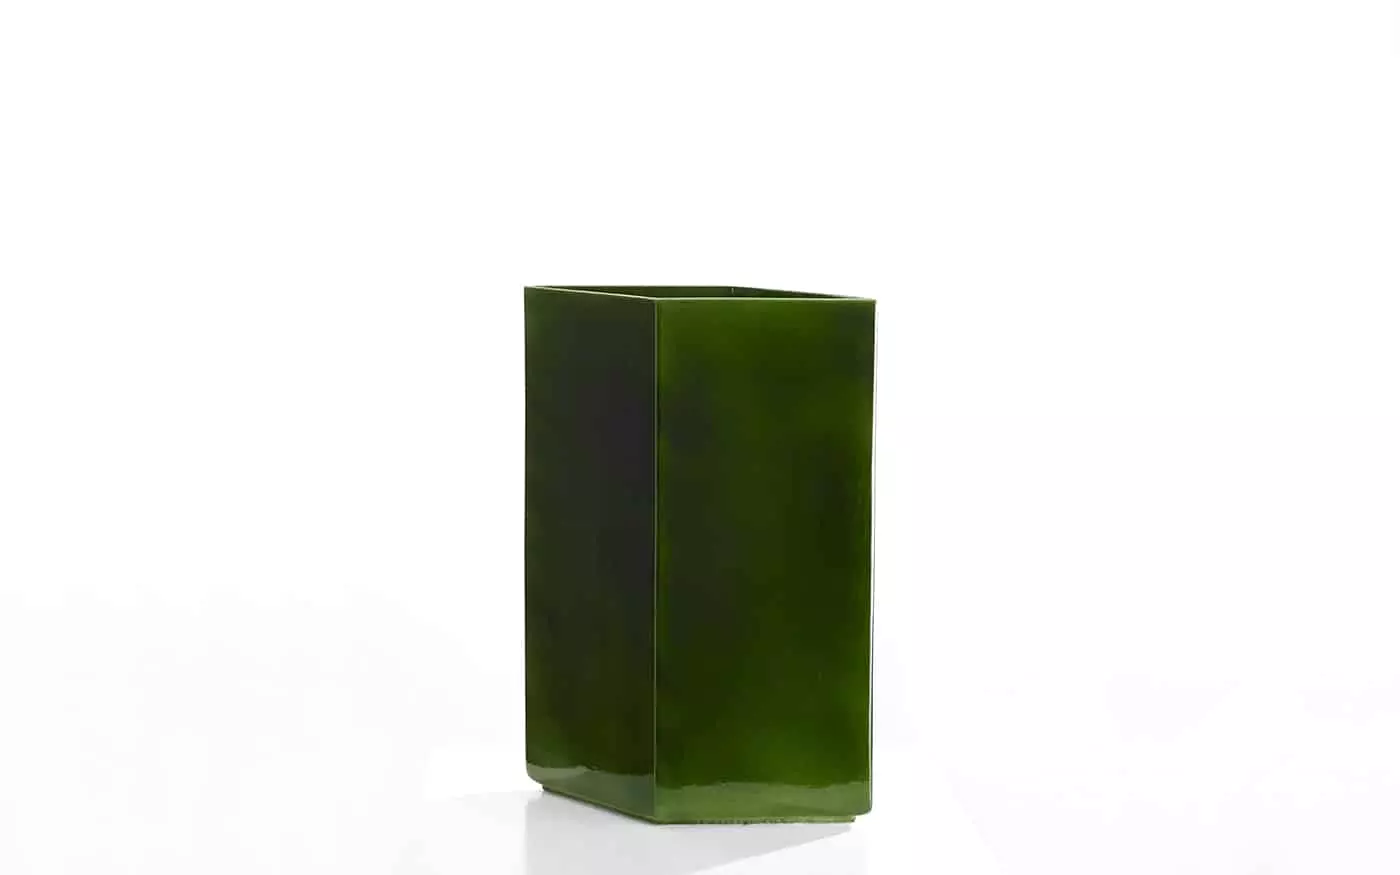 Vase Losange 67 green - Ronan and Erwan Bouroullec - Losange.